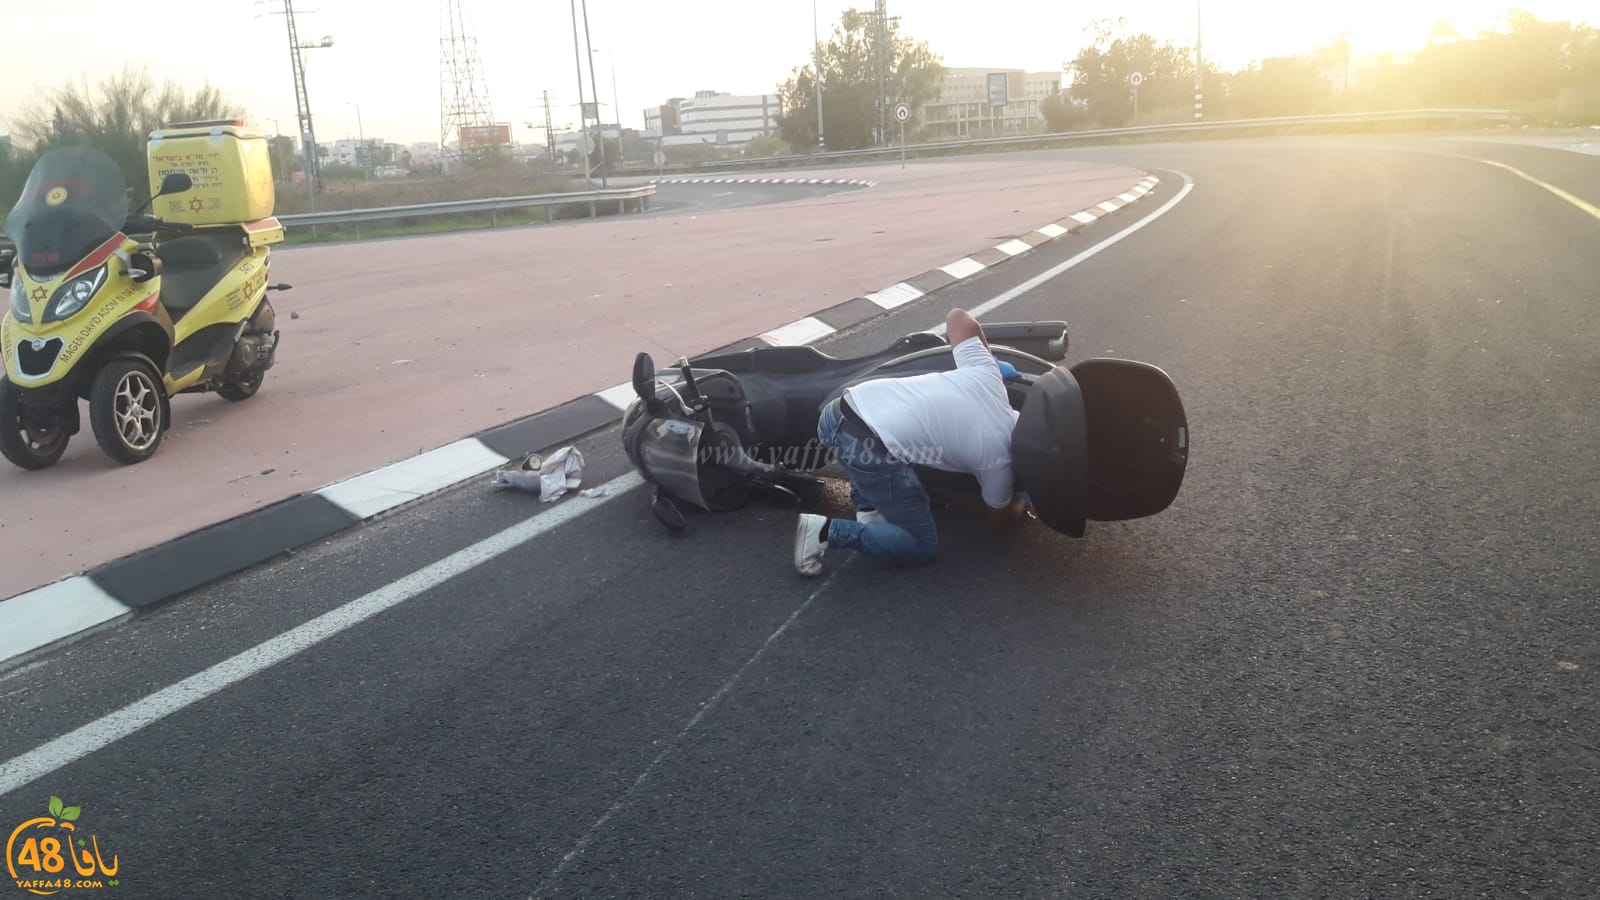  اللد: مصرع سائق دراجة نارية بحادث طرق مروّع على مدخل المدينة 